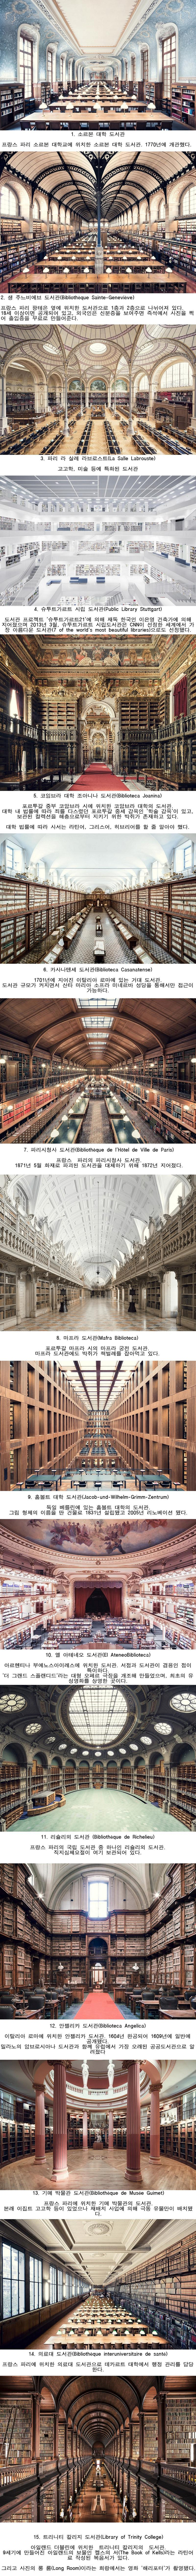 세계에서 아름다운 도서관 15곳.png.jpg